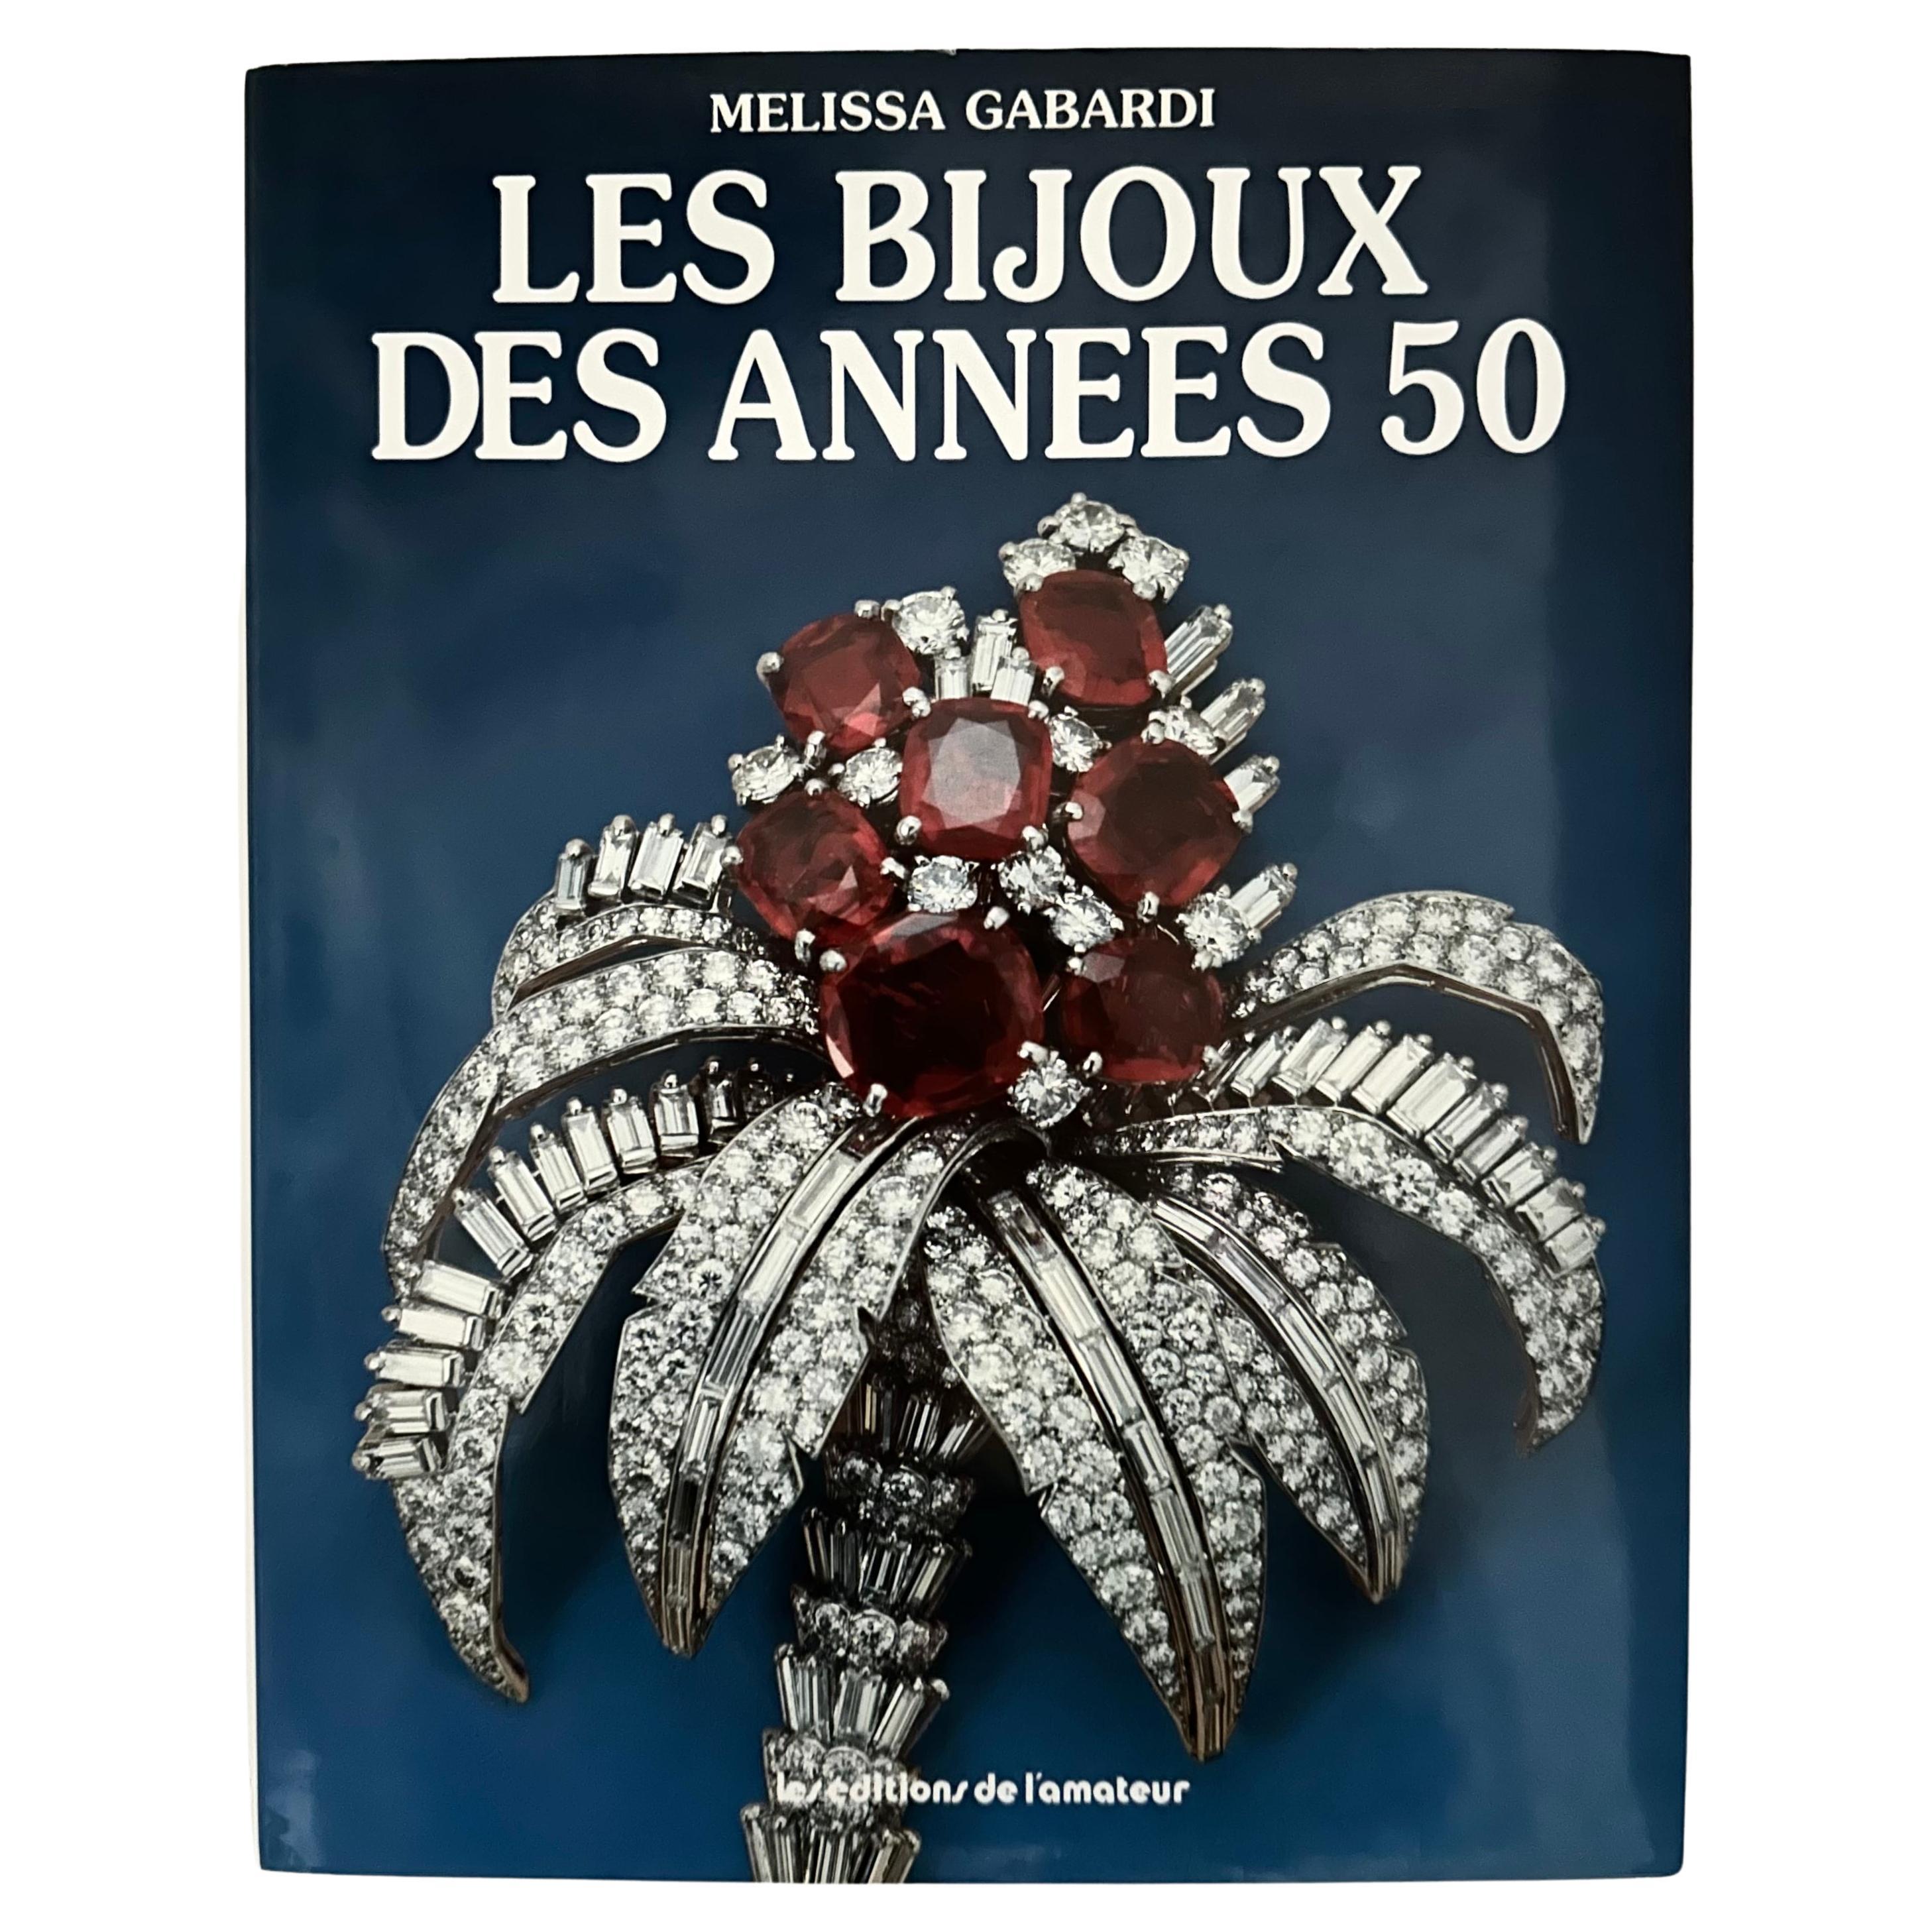 Les Bijoux des Années 50 - Melissa Gabardi - 1st French edition, Paris, 1987 For Sale